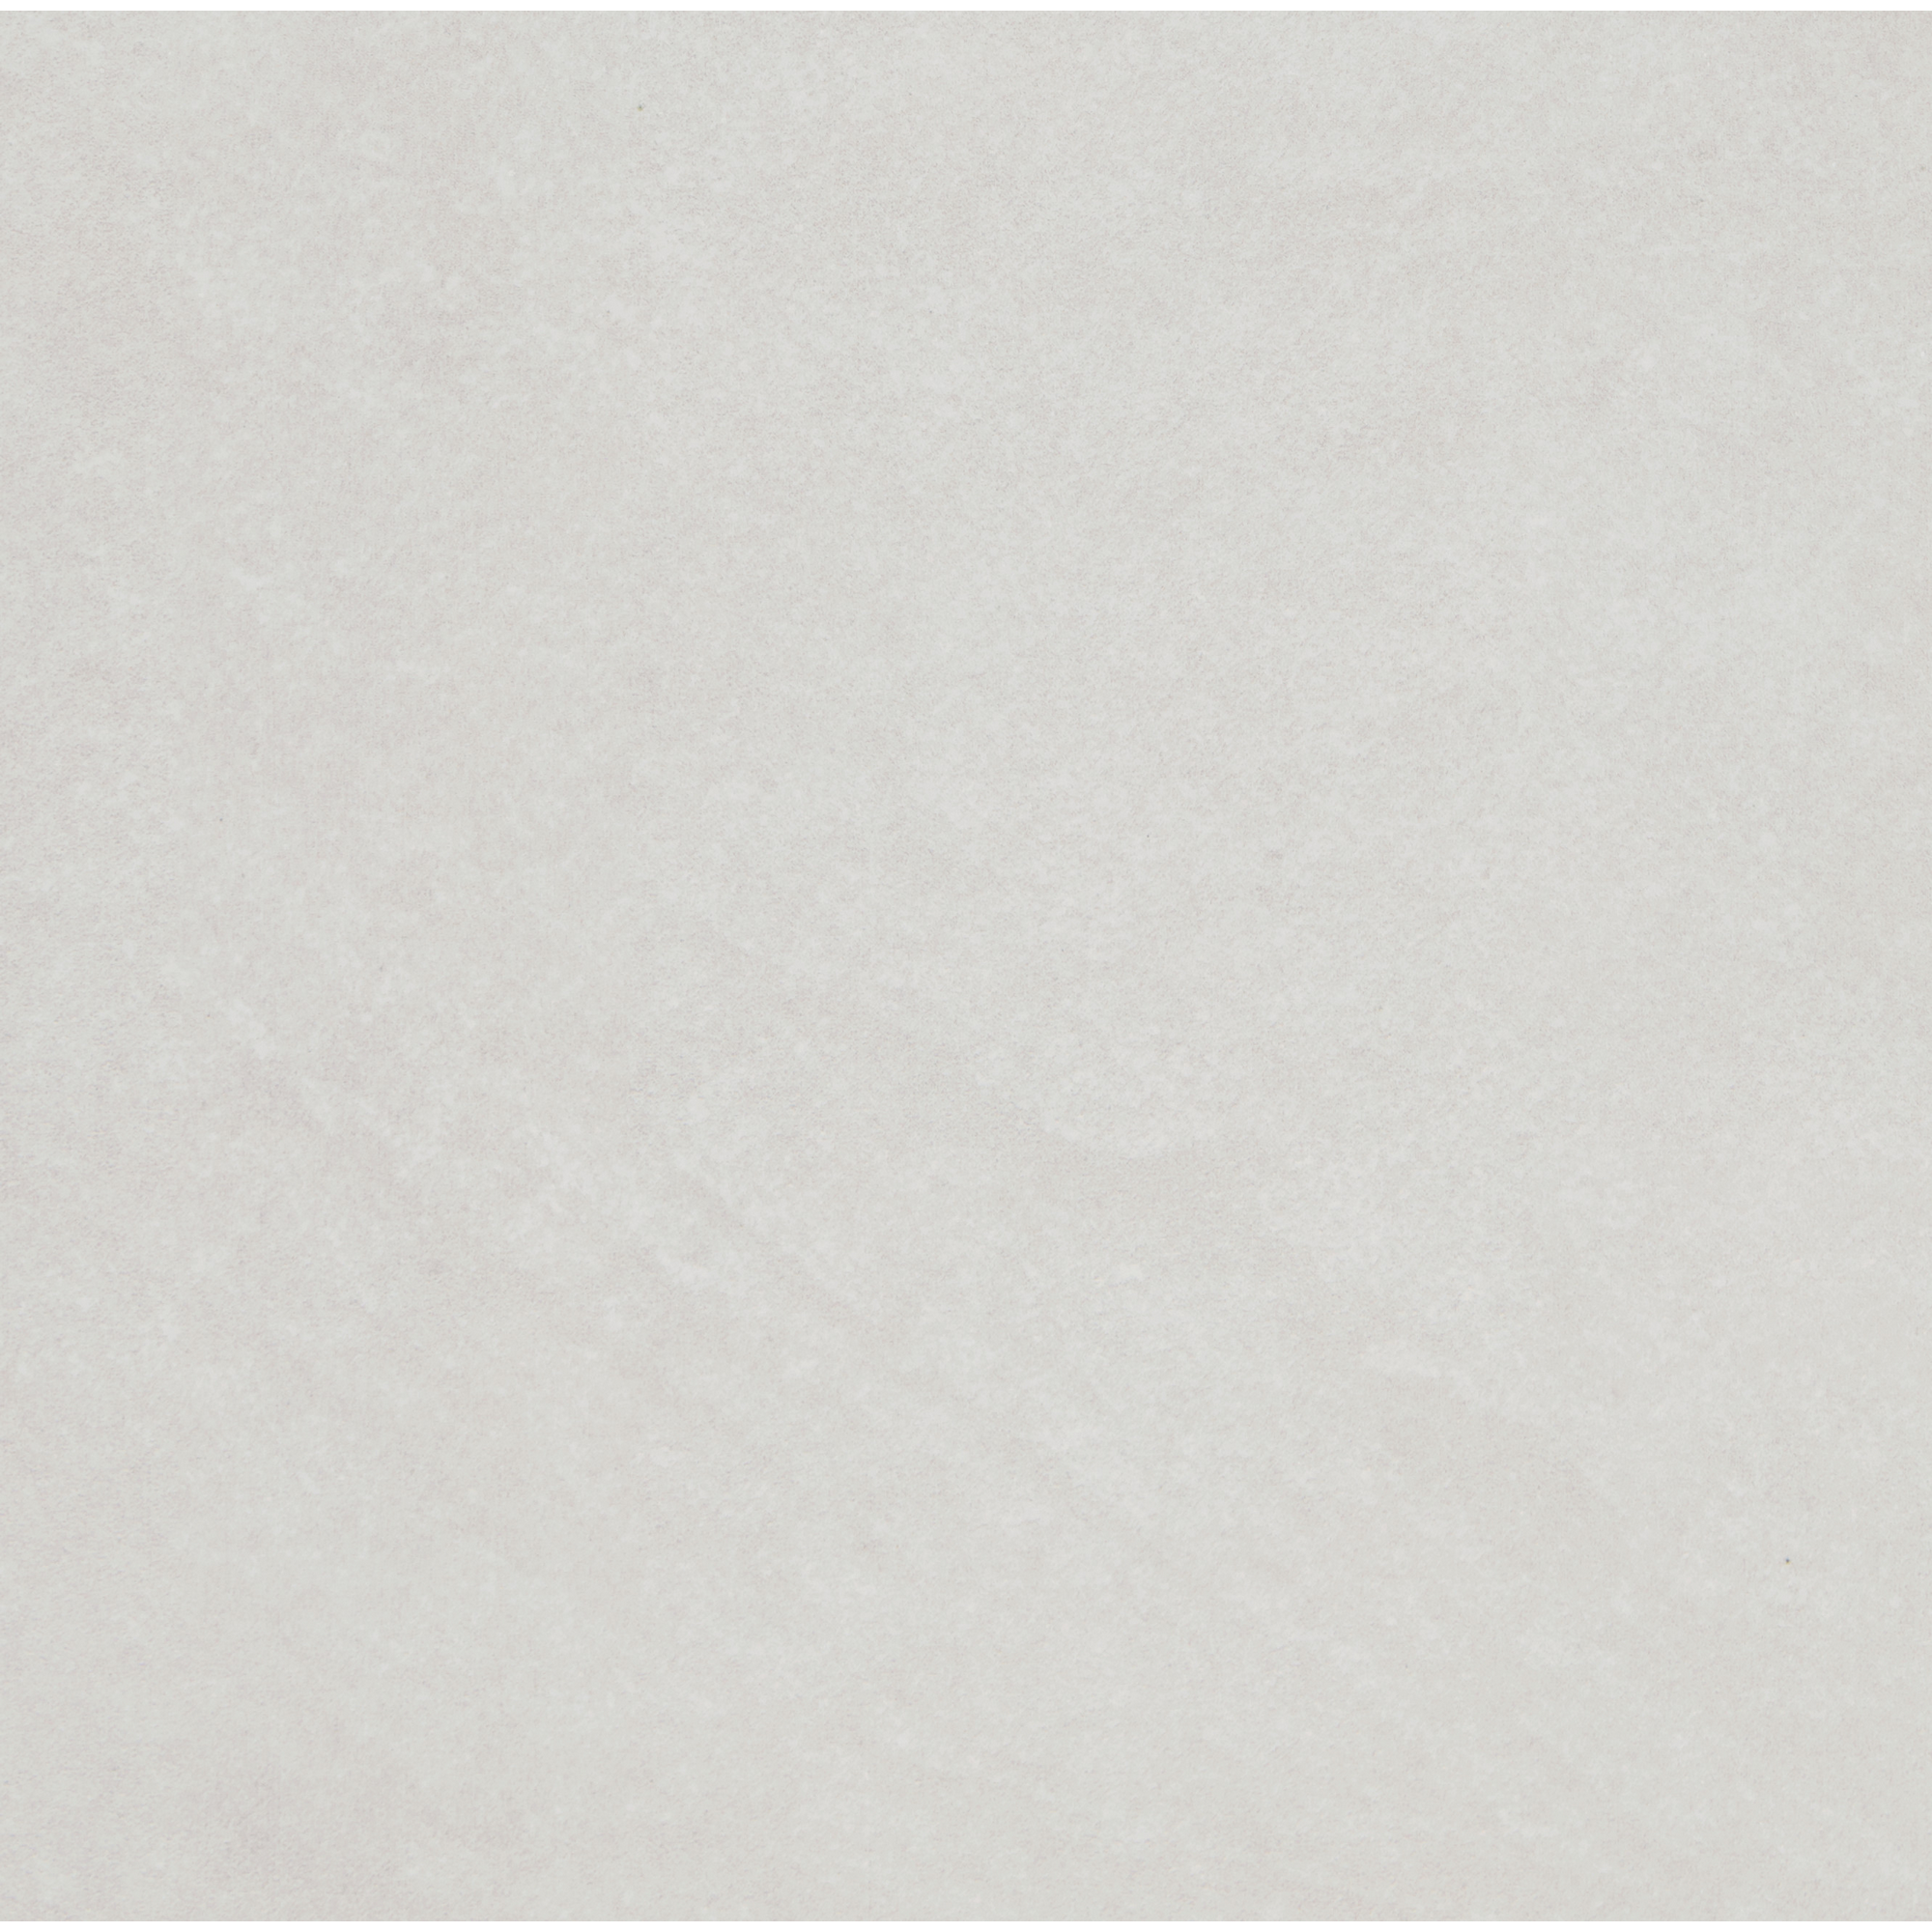 Bodenfliese 'Spazio' Feinsteinzeug grau 32,5 x 32,5 cm + product picture